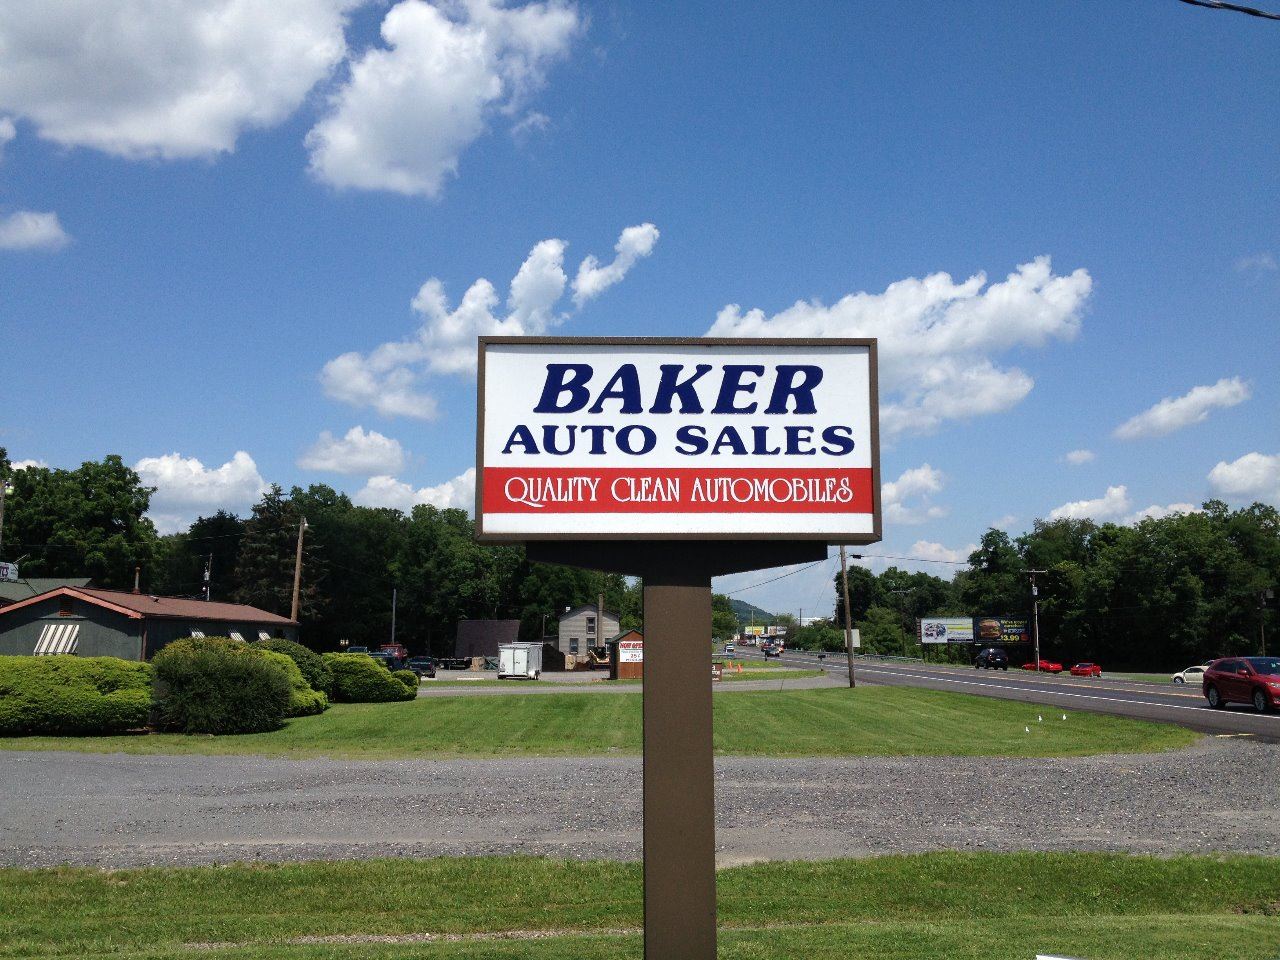 Baker Auto Sales